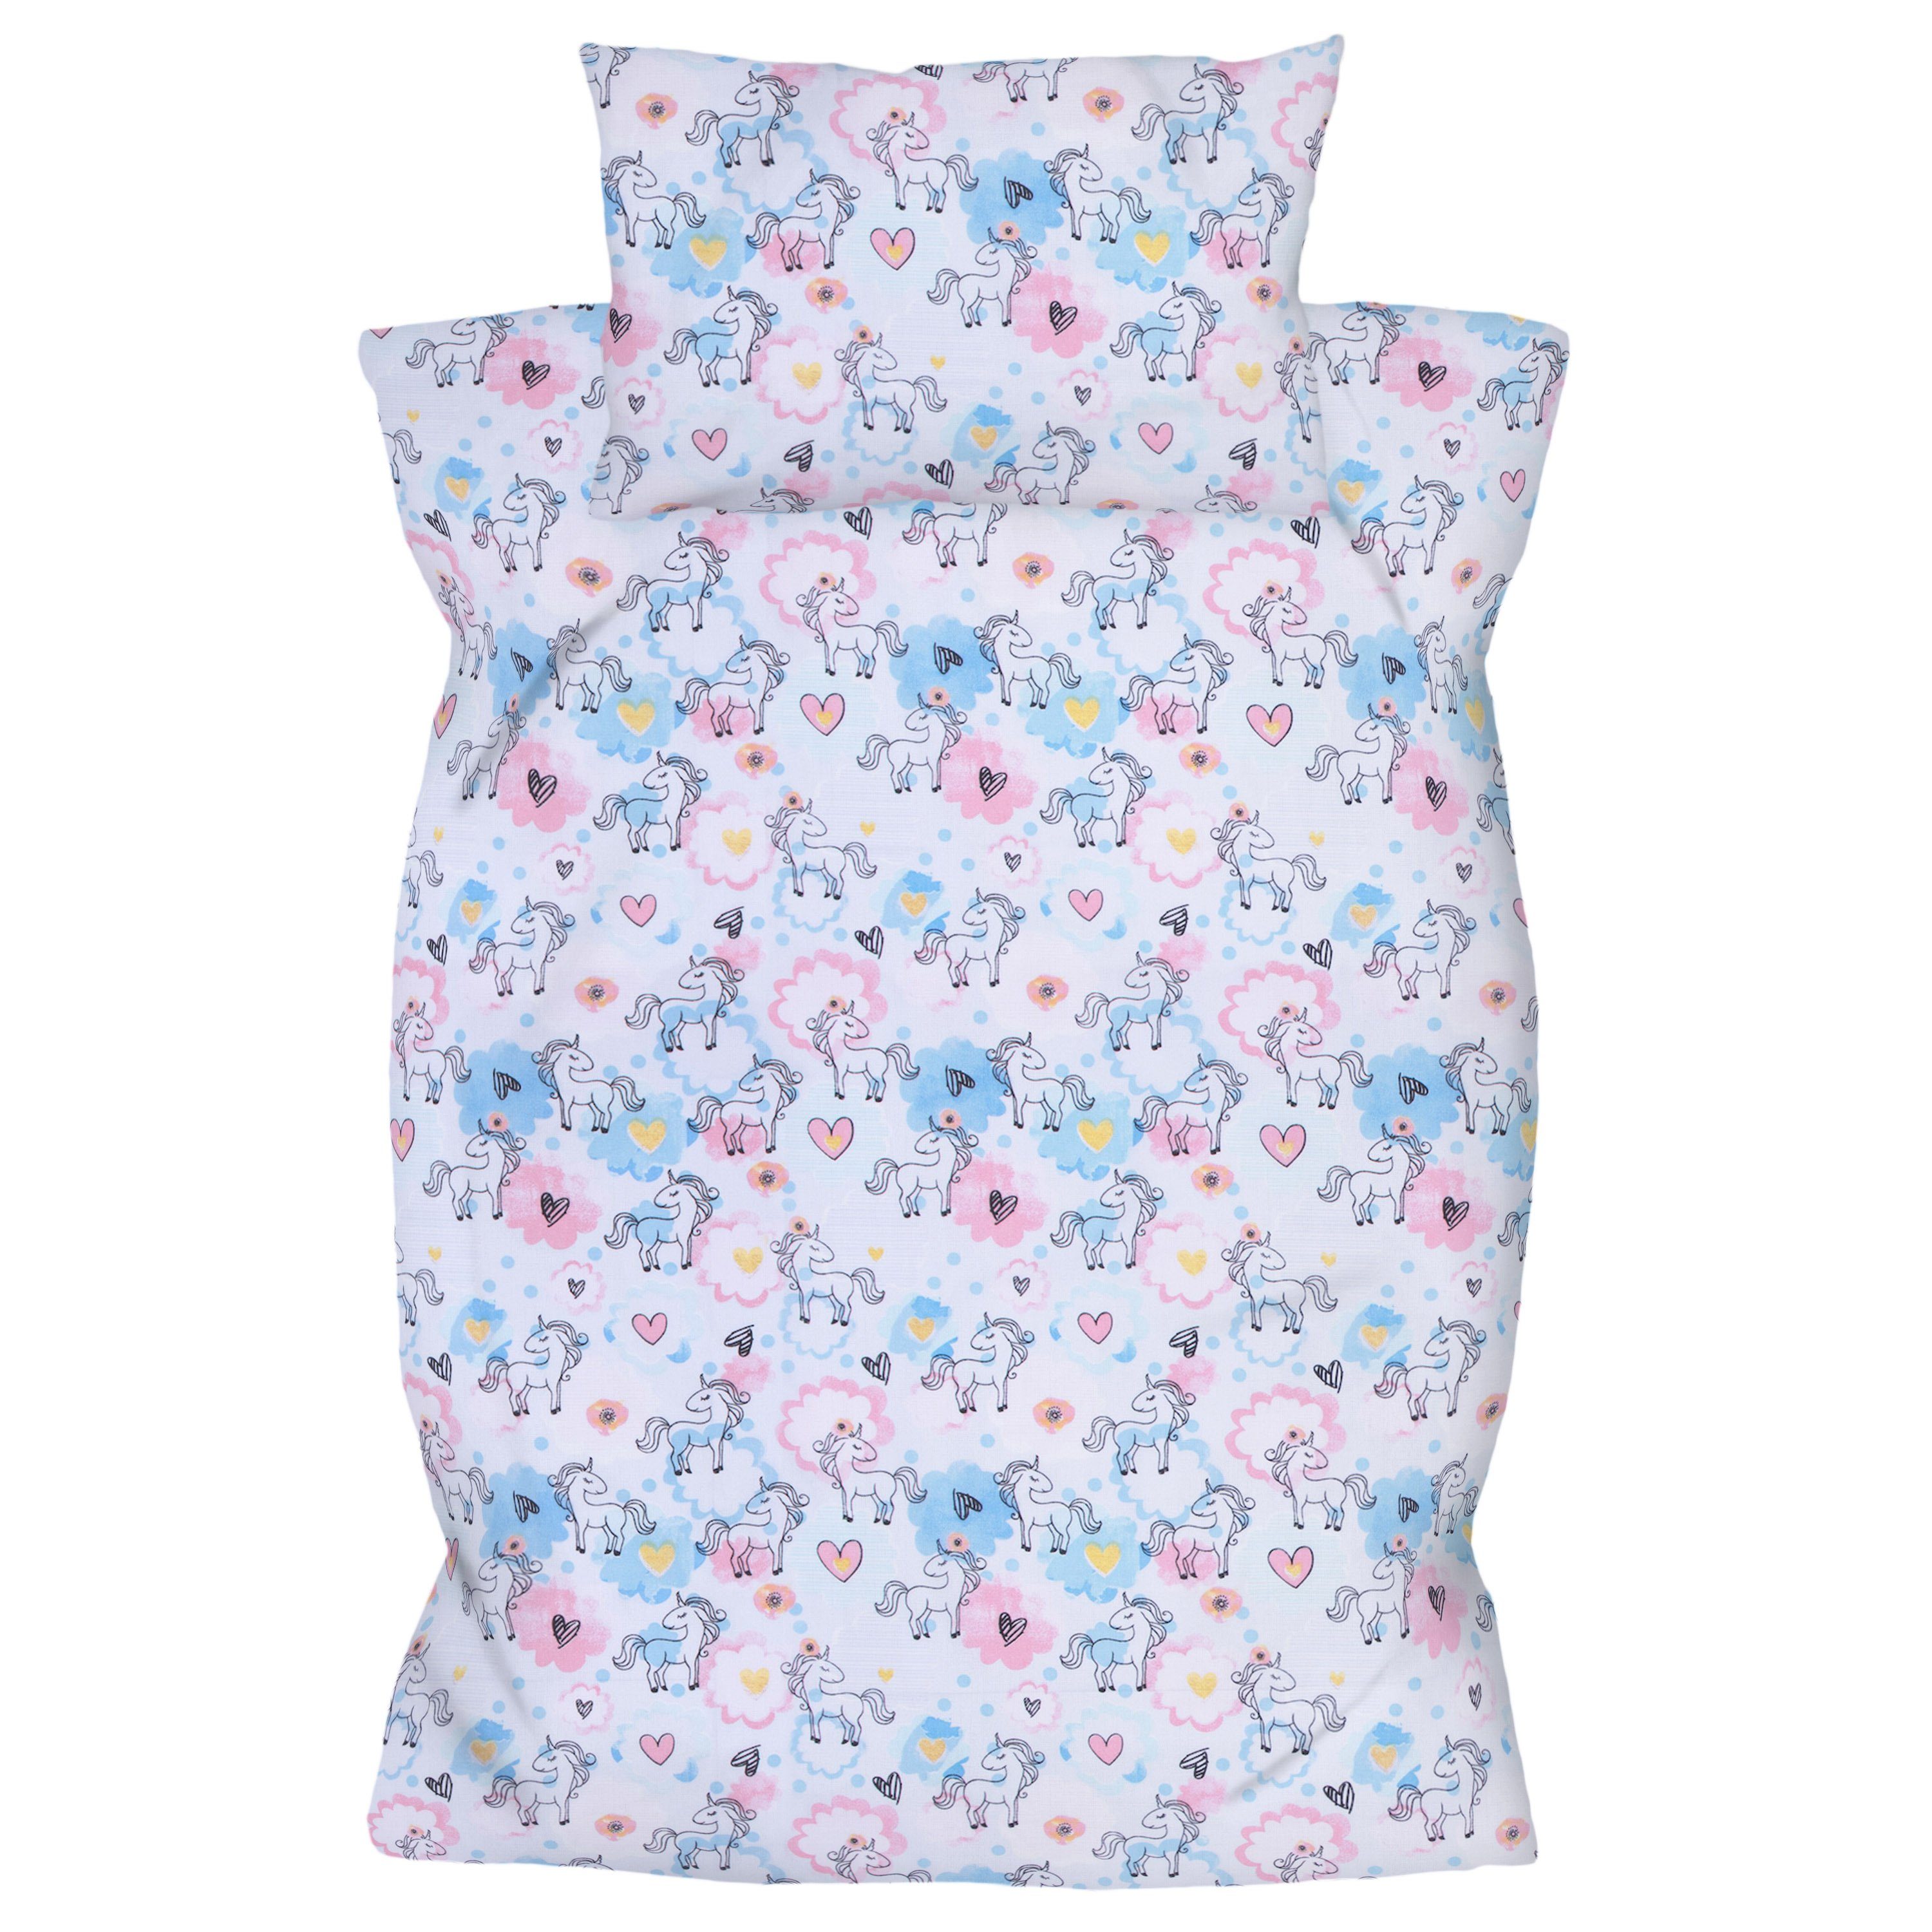 Kinderbettwäsche Babybettwäsche - Bettbezug 100x135 cm, Kopfkissenbezug 40x60 cm, Amilian, 100% Baumwolle